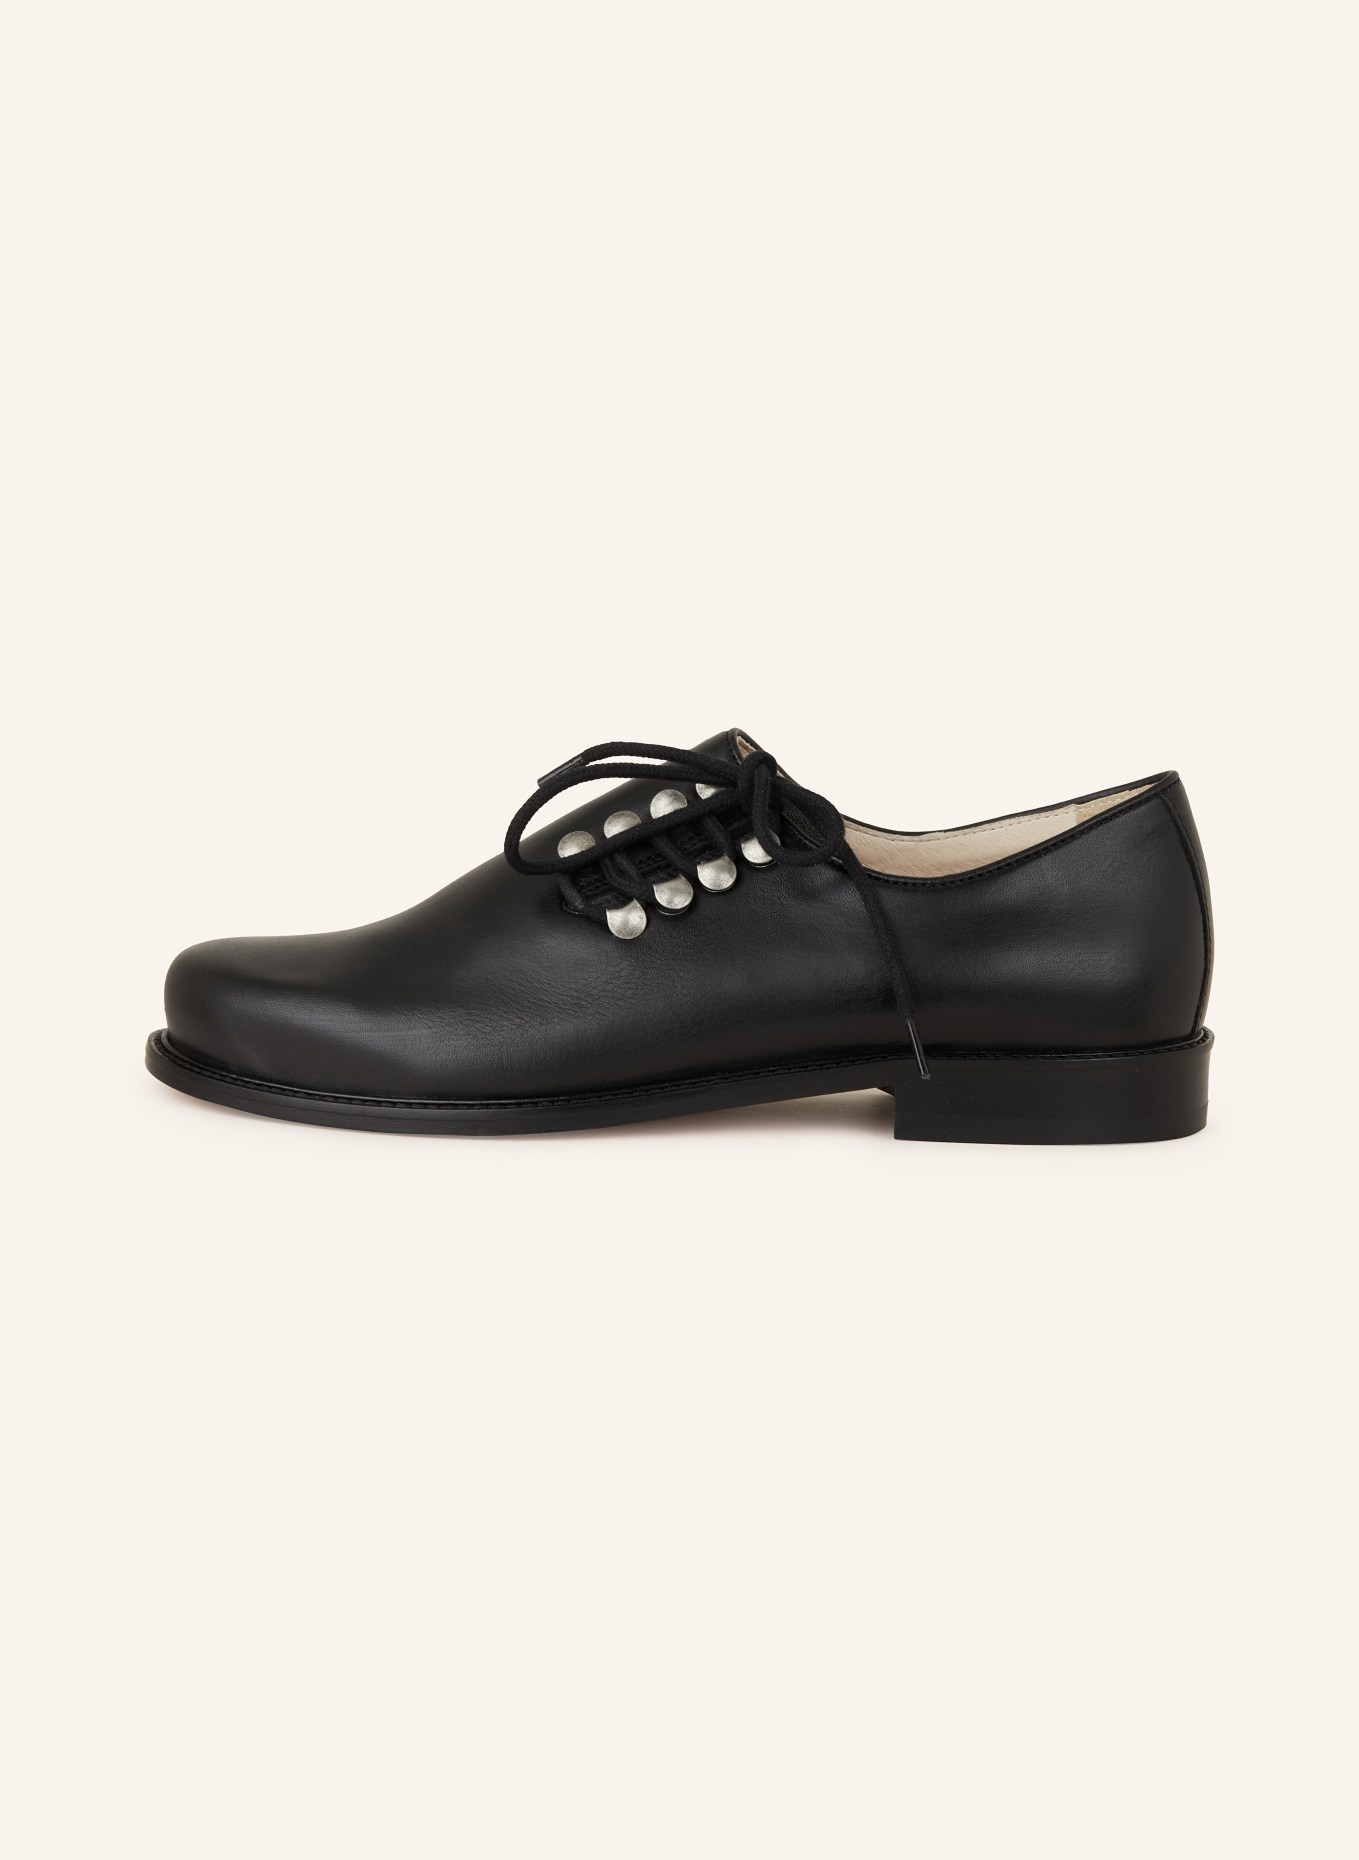 OSTARRICHI Trachten lace-up shoes, Color: BLACK (Image 4)